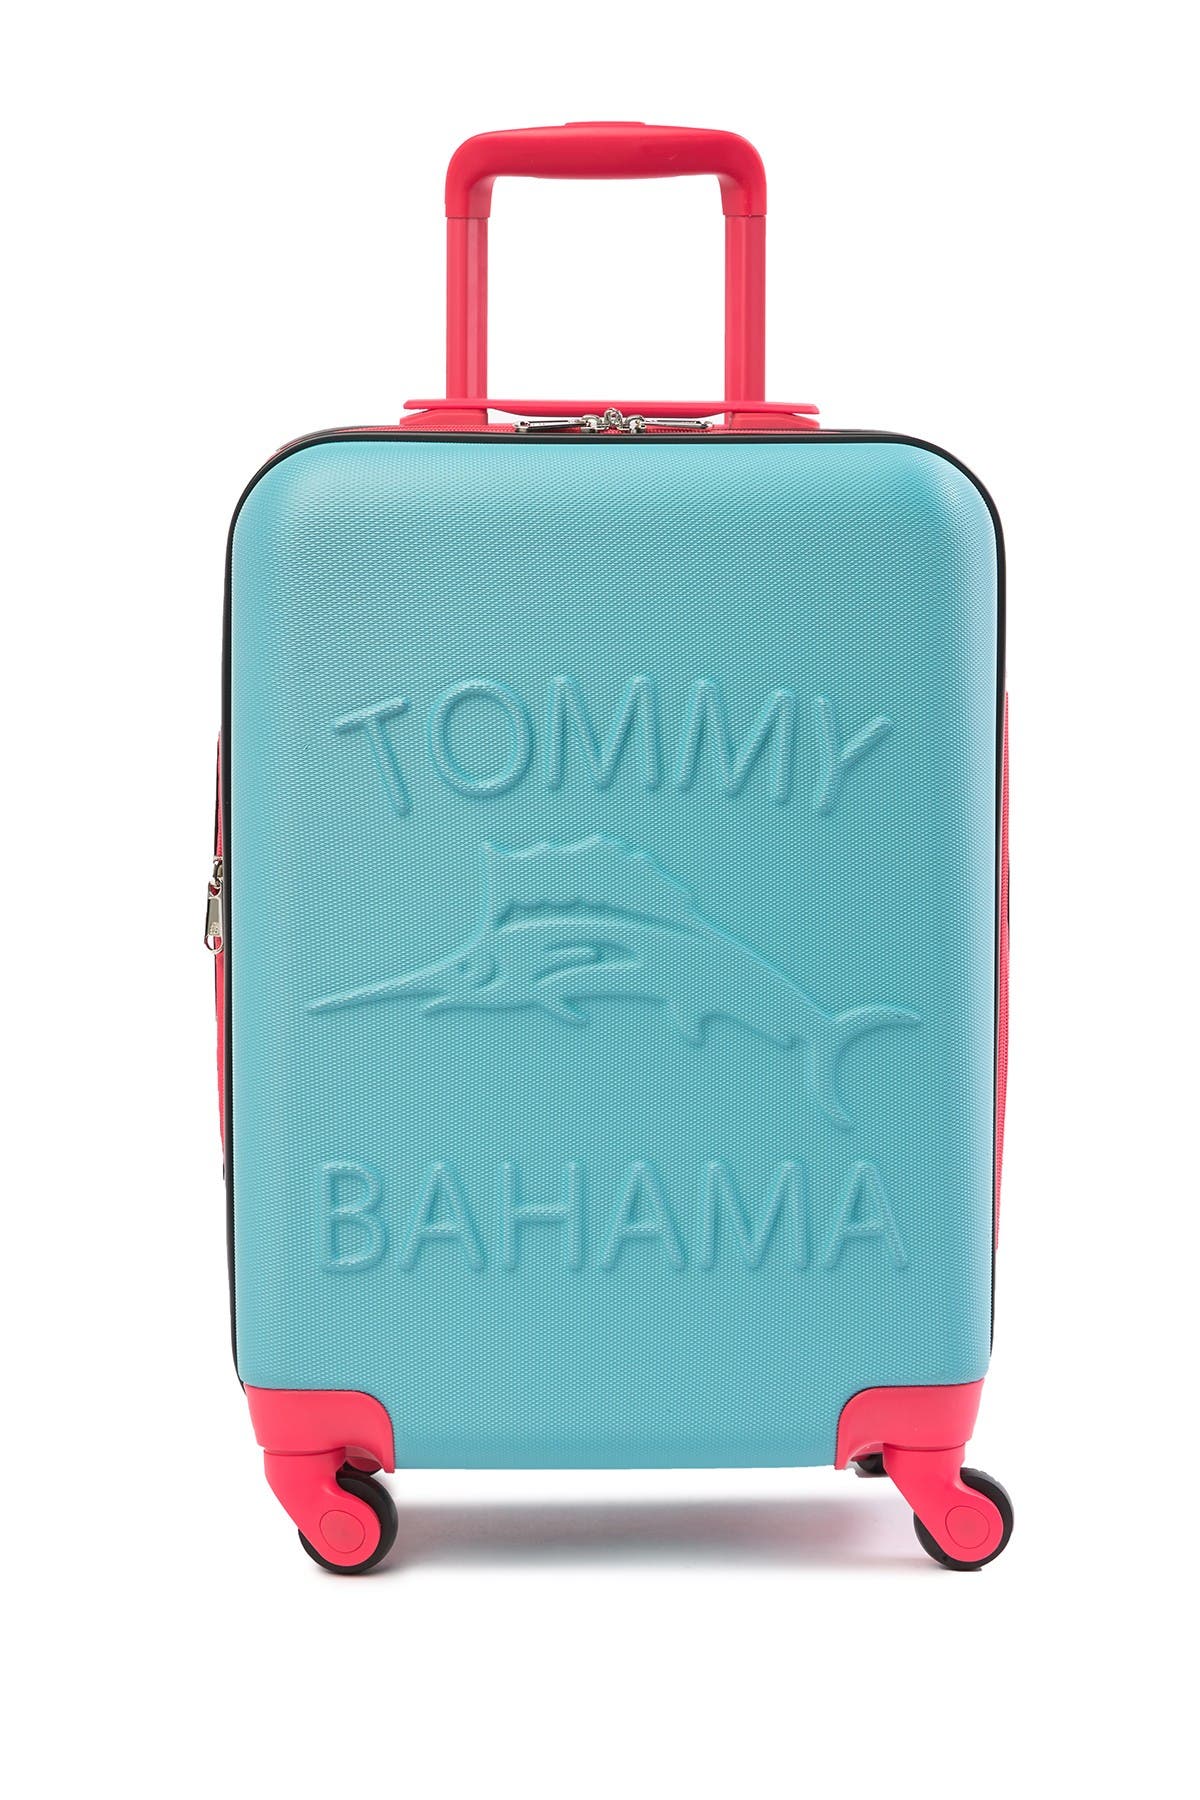 tommy bahama ouzo luggage